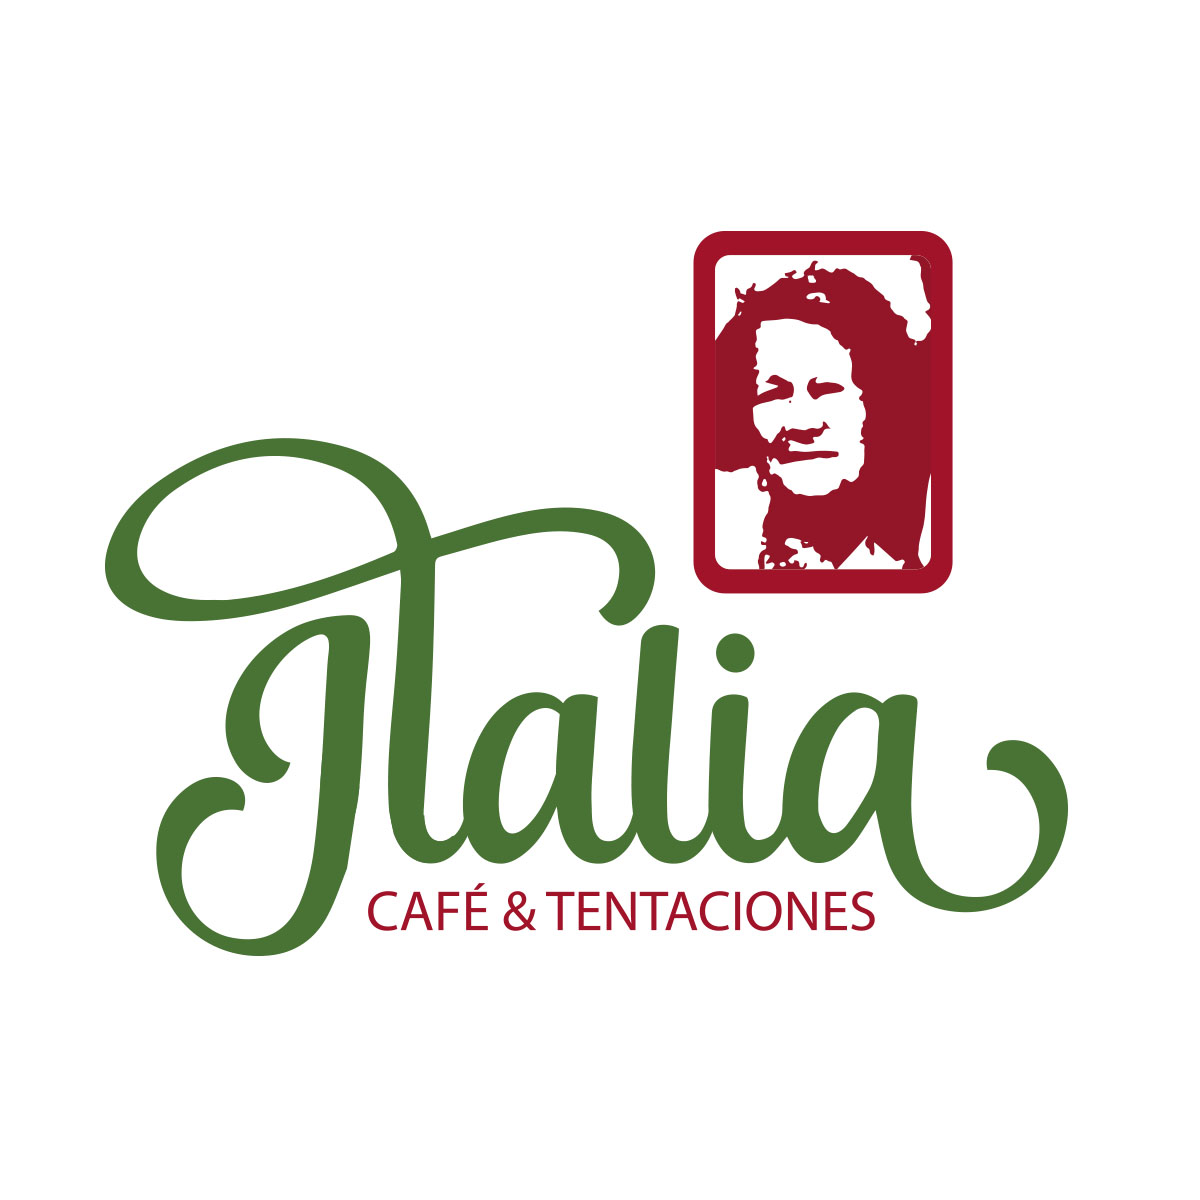 2016 Italia cafe